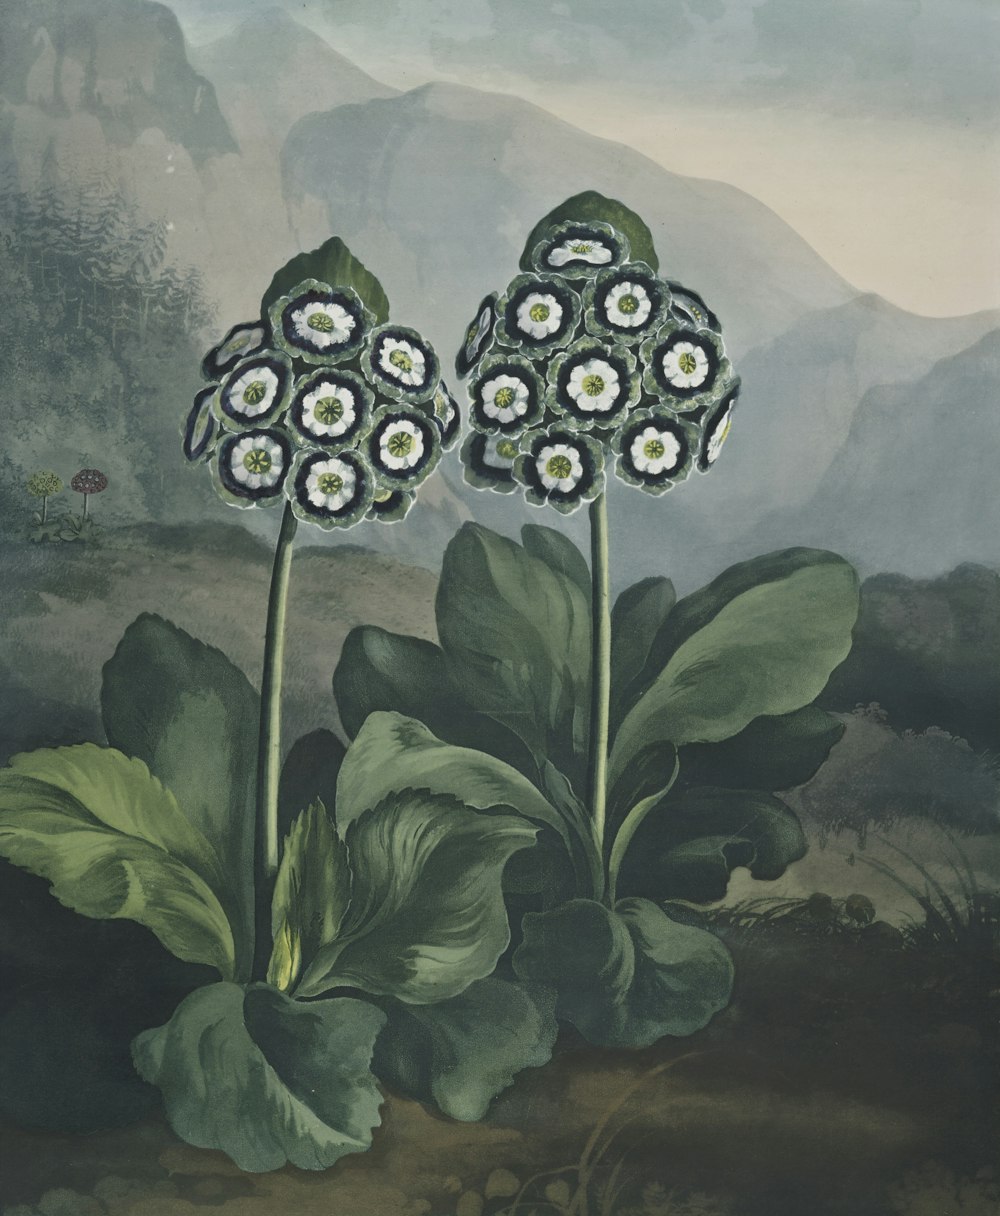 Pintura de flores de pétalos blancos y verdes